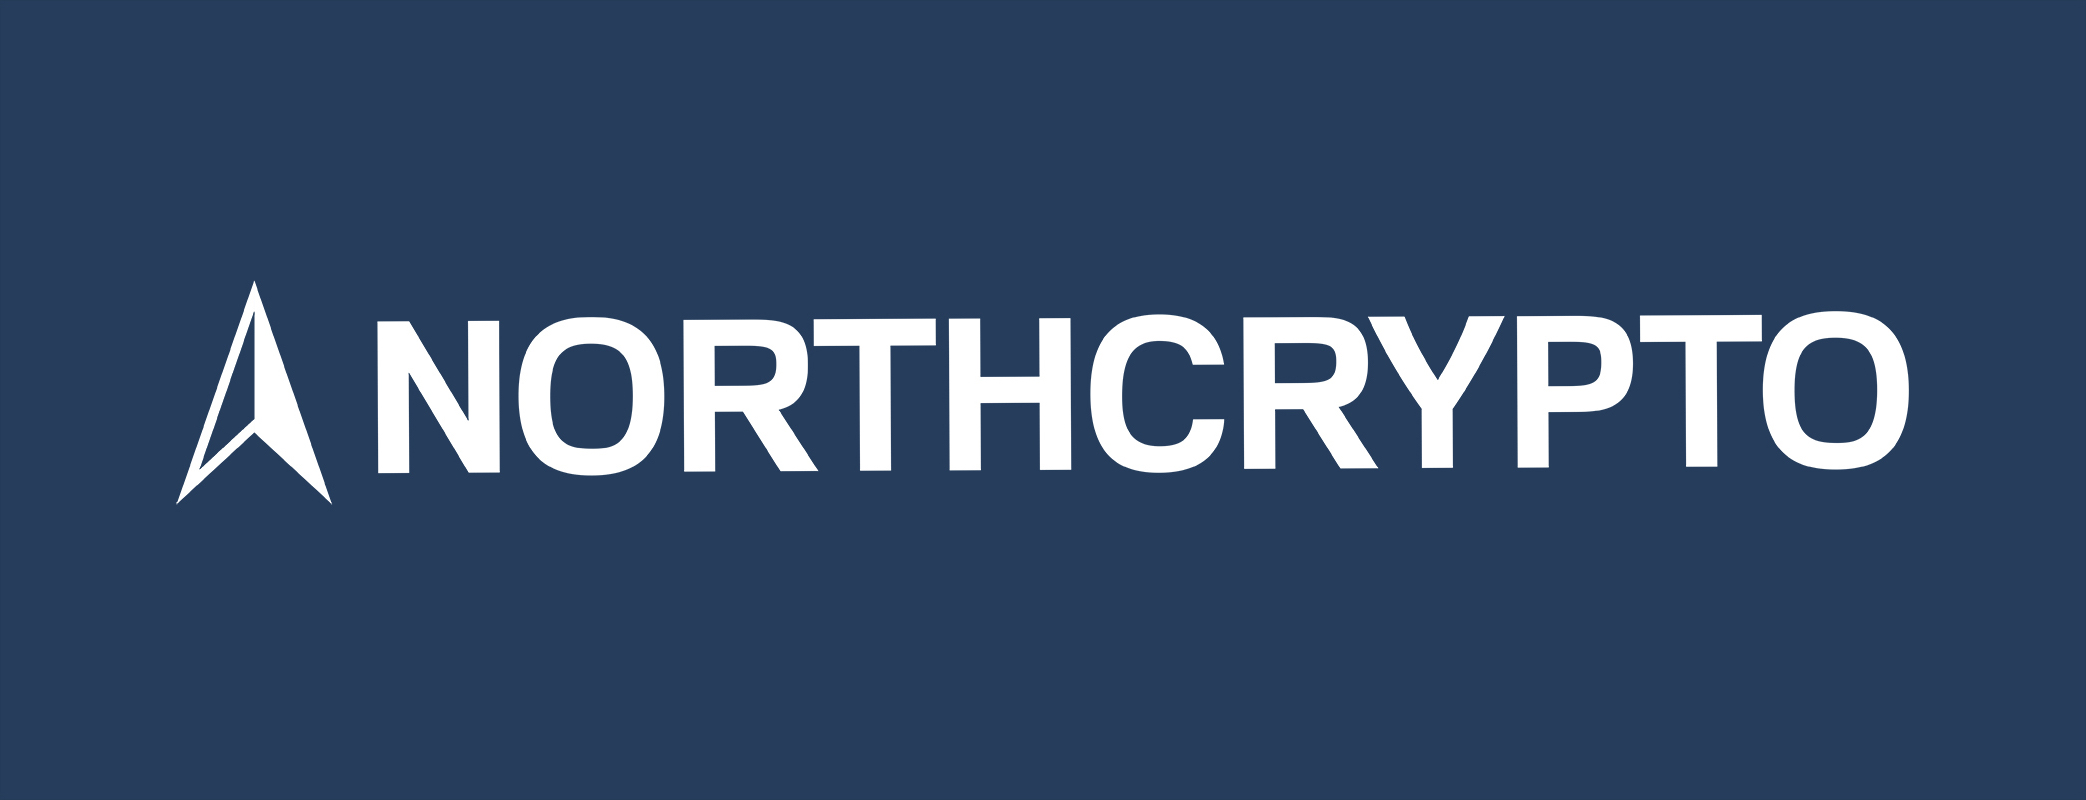 Northcrypto och Ethereum merge